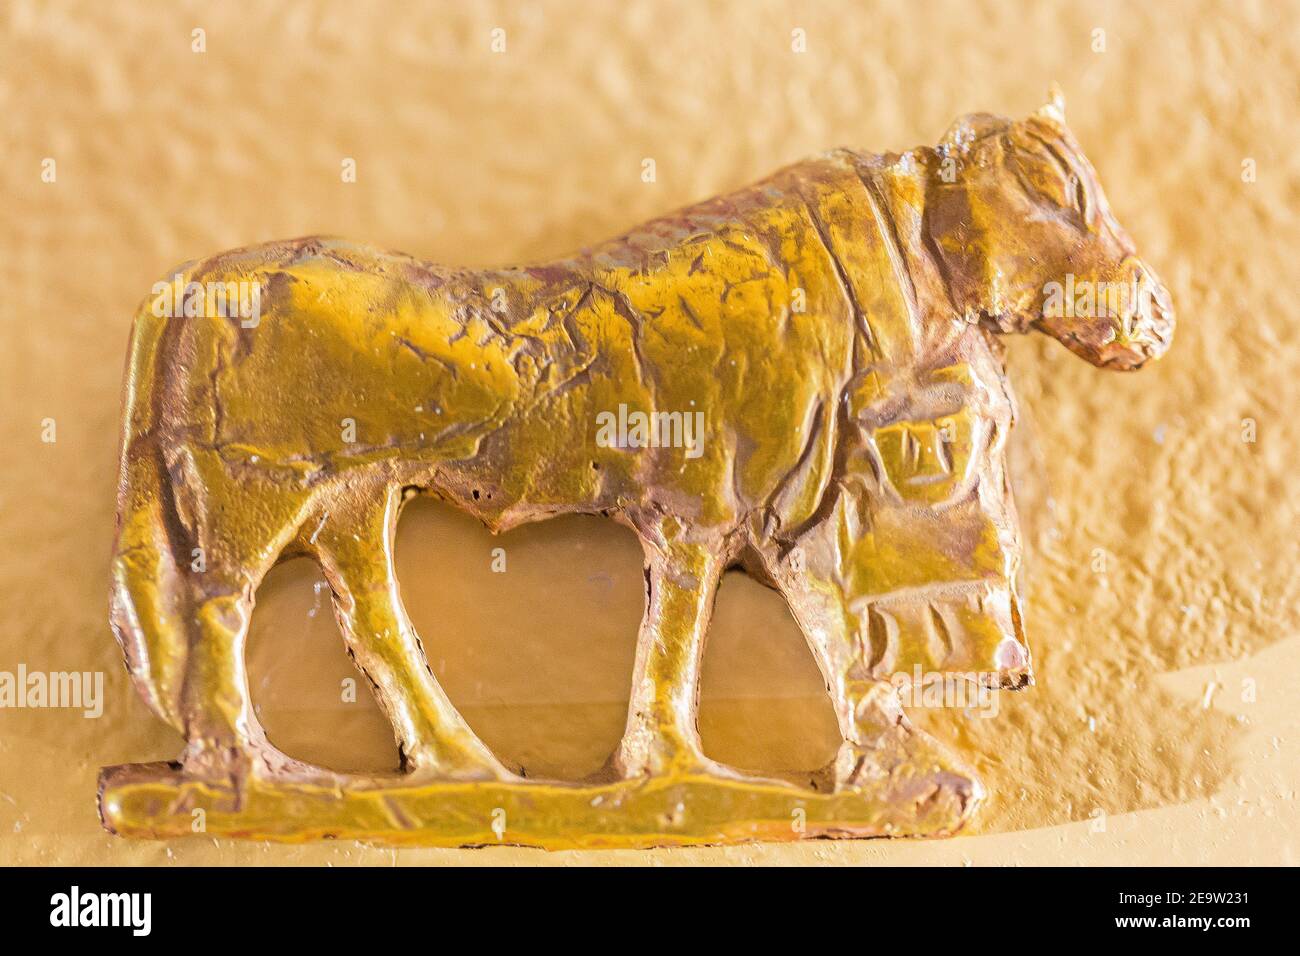 Egitto, Cairo, Museo Egizio, amuleto d'oro trovato in una tomba di Nag el Deir, prima dinastia: Una mucca. Foto Stock